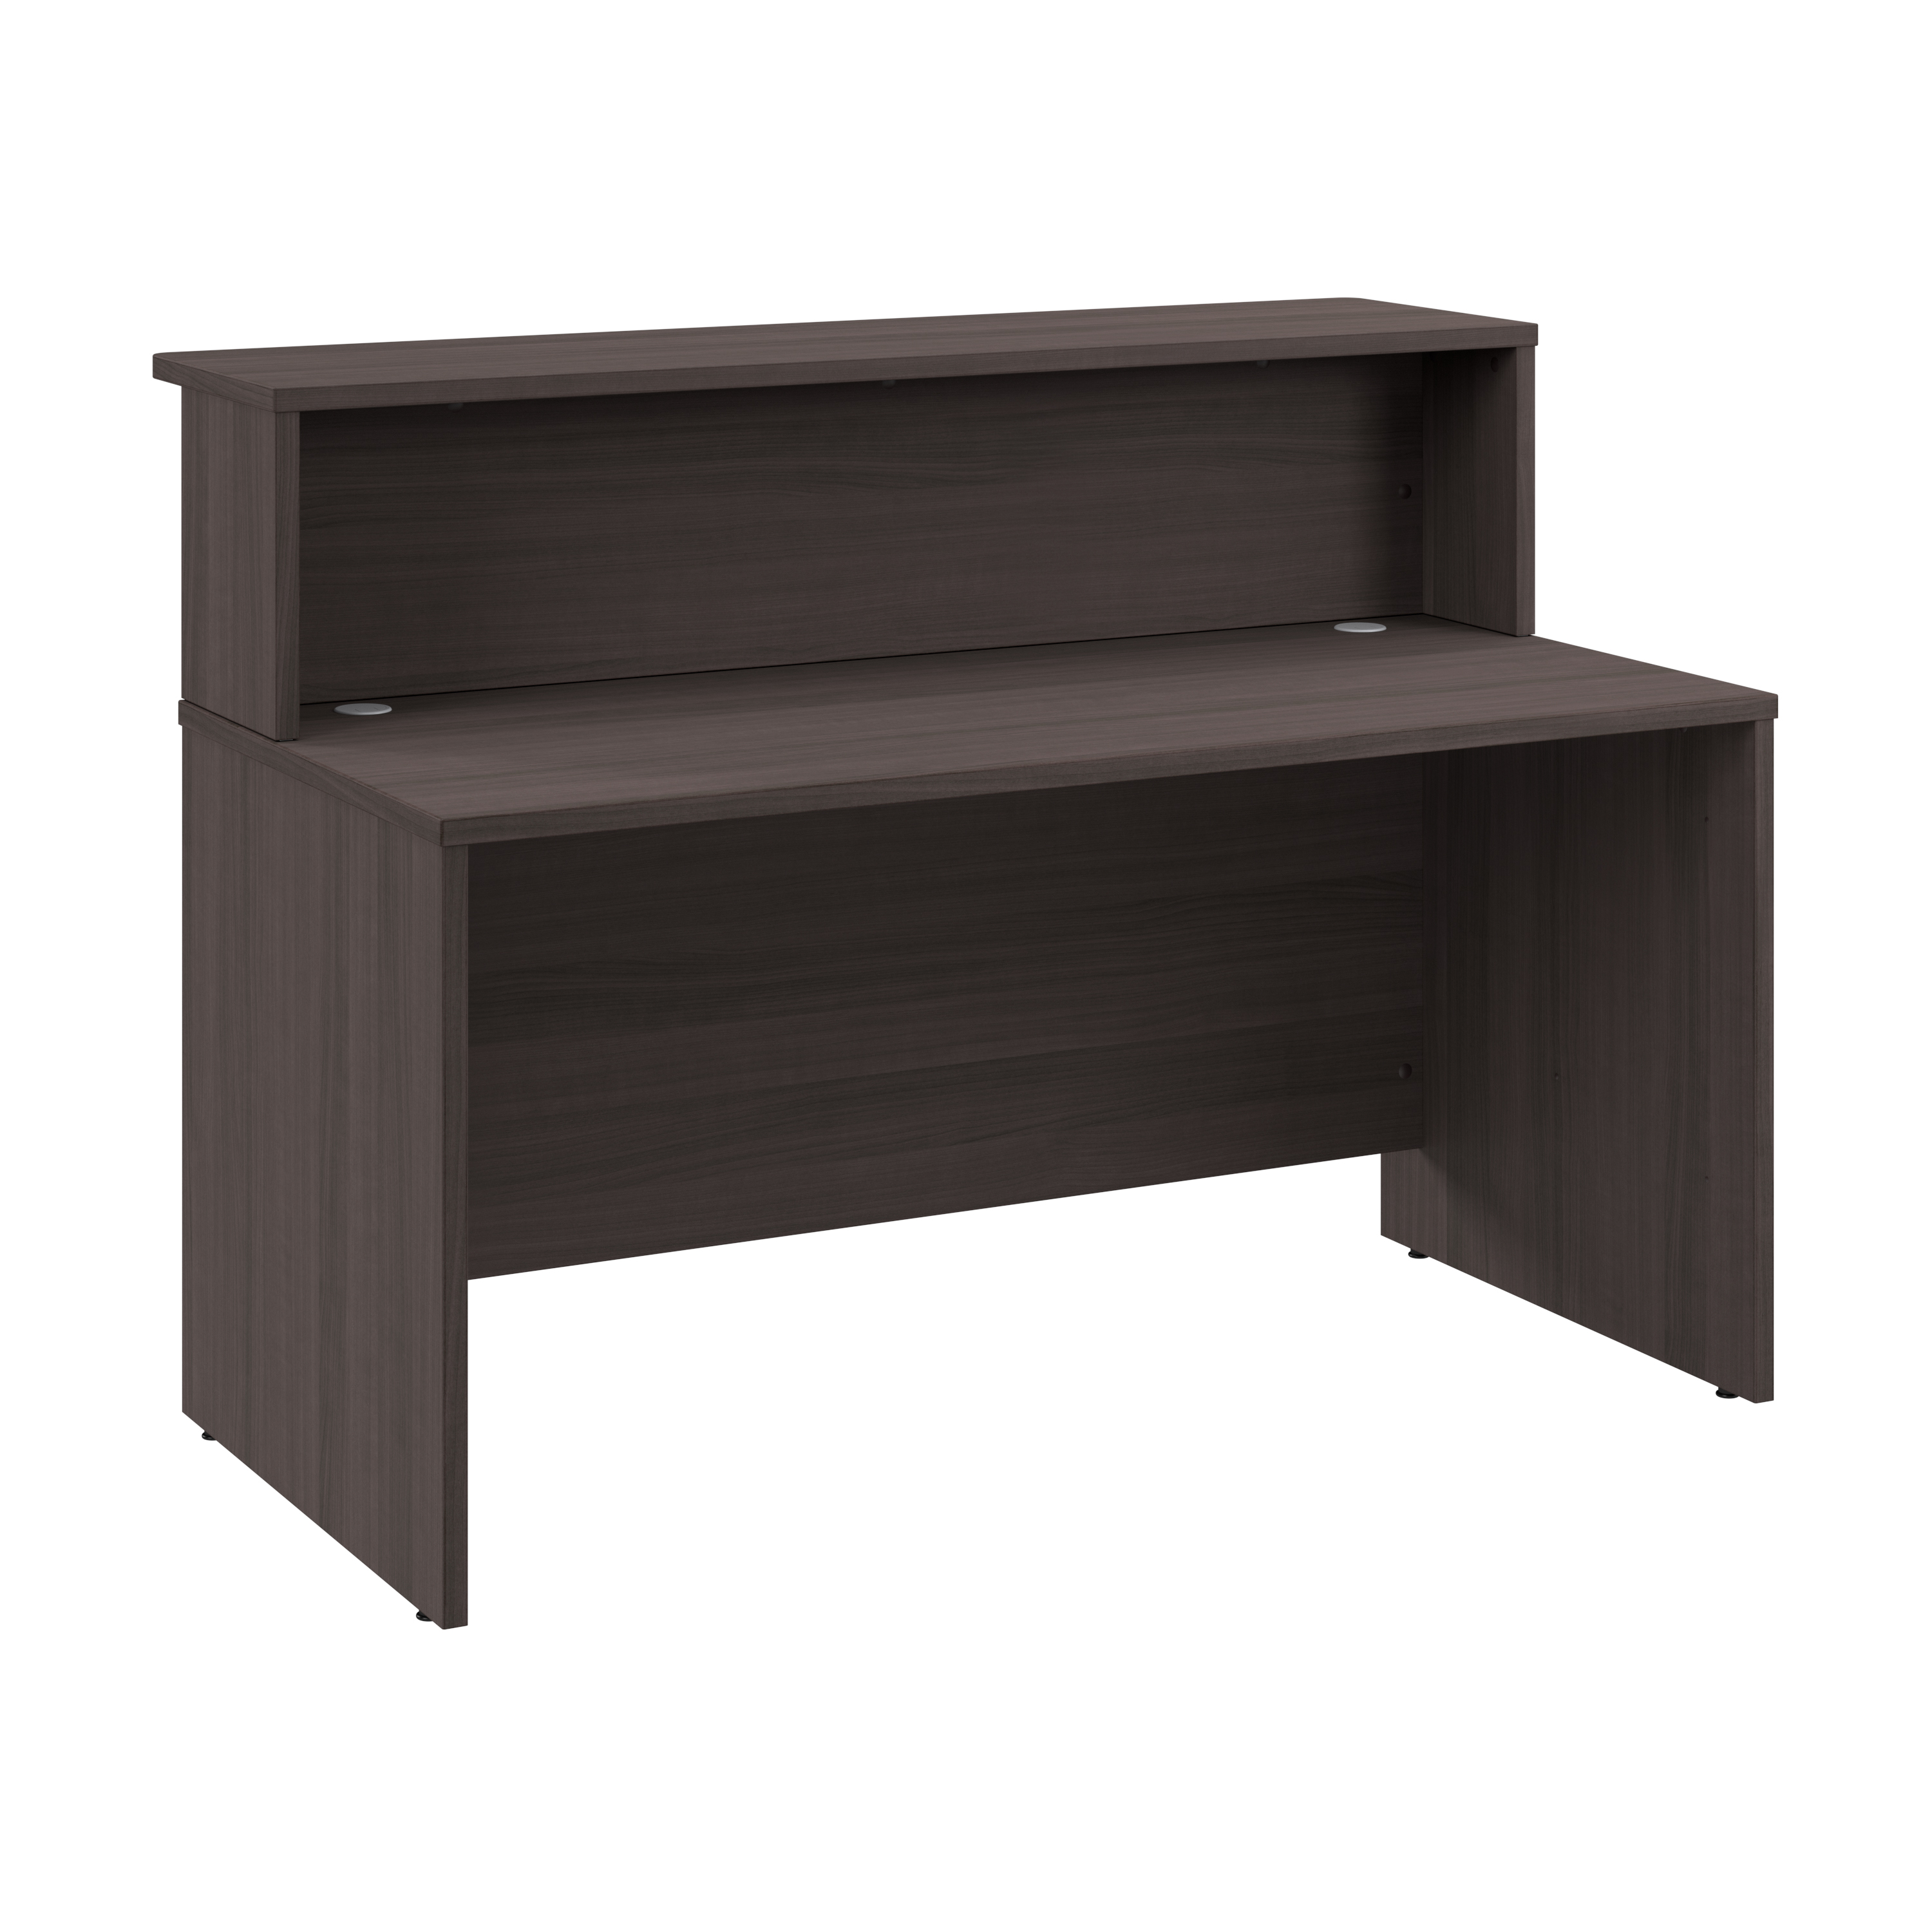 Shop Bush Business Furniture Arrive 60W x 30D Reception Desk with Shelf 02 ARV001SG #color_storm gray